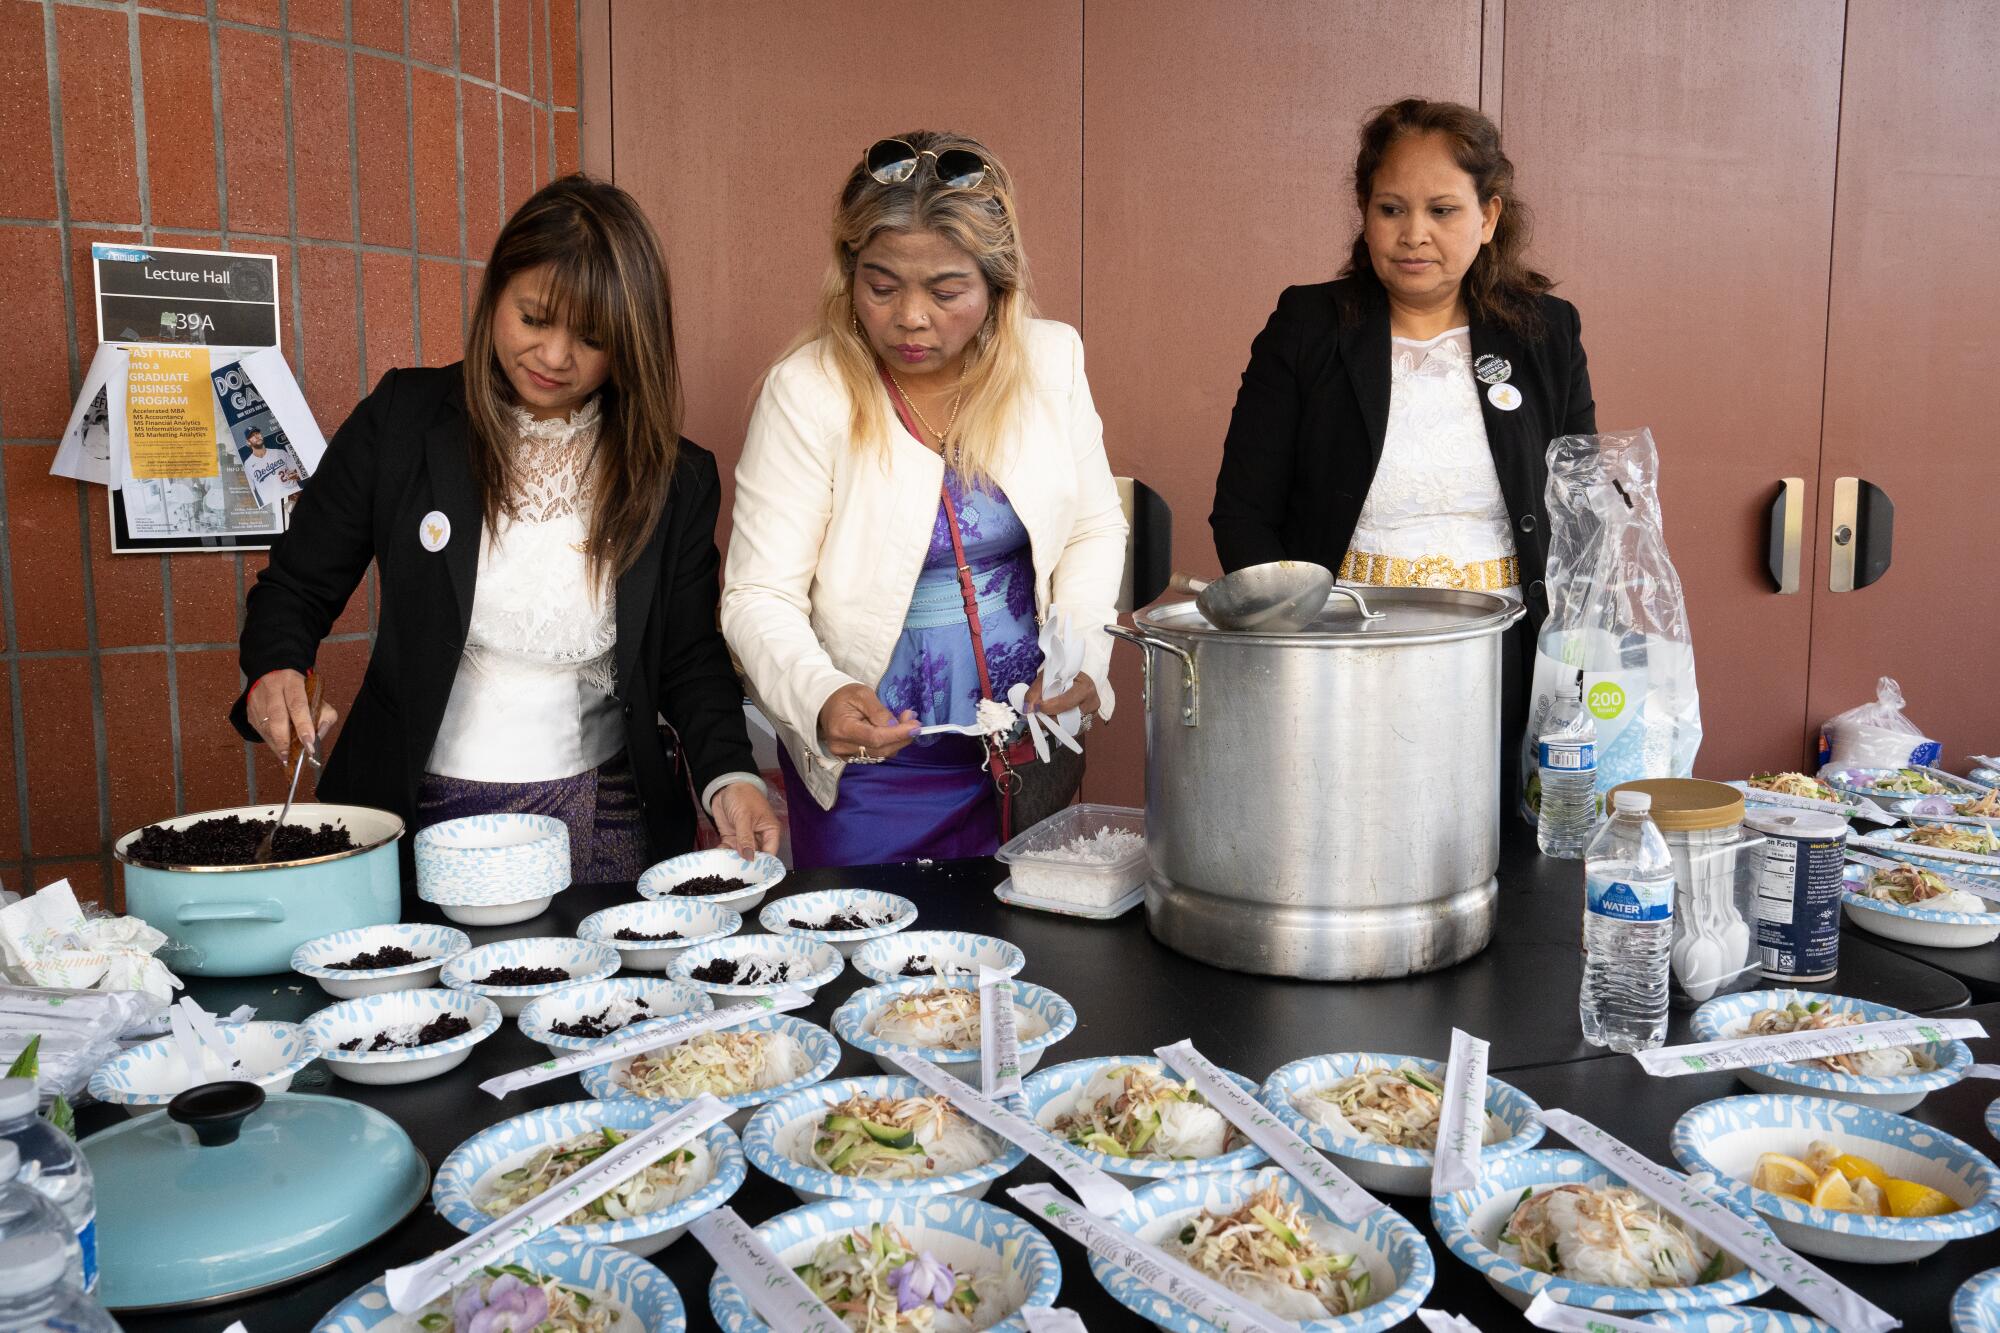 Attendees took breaks in between sessions eating food passed out by volunteers.